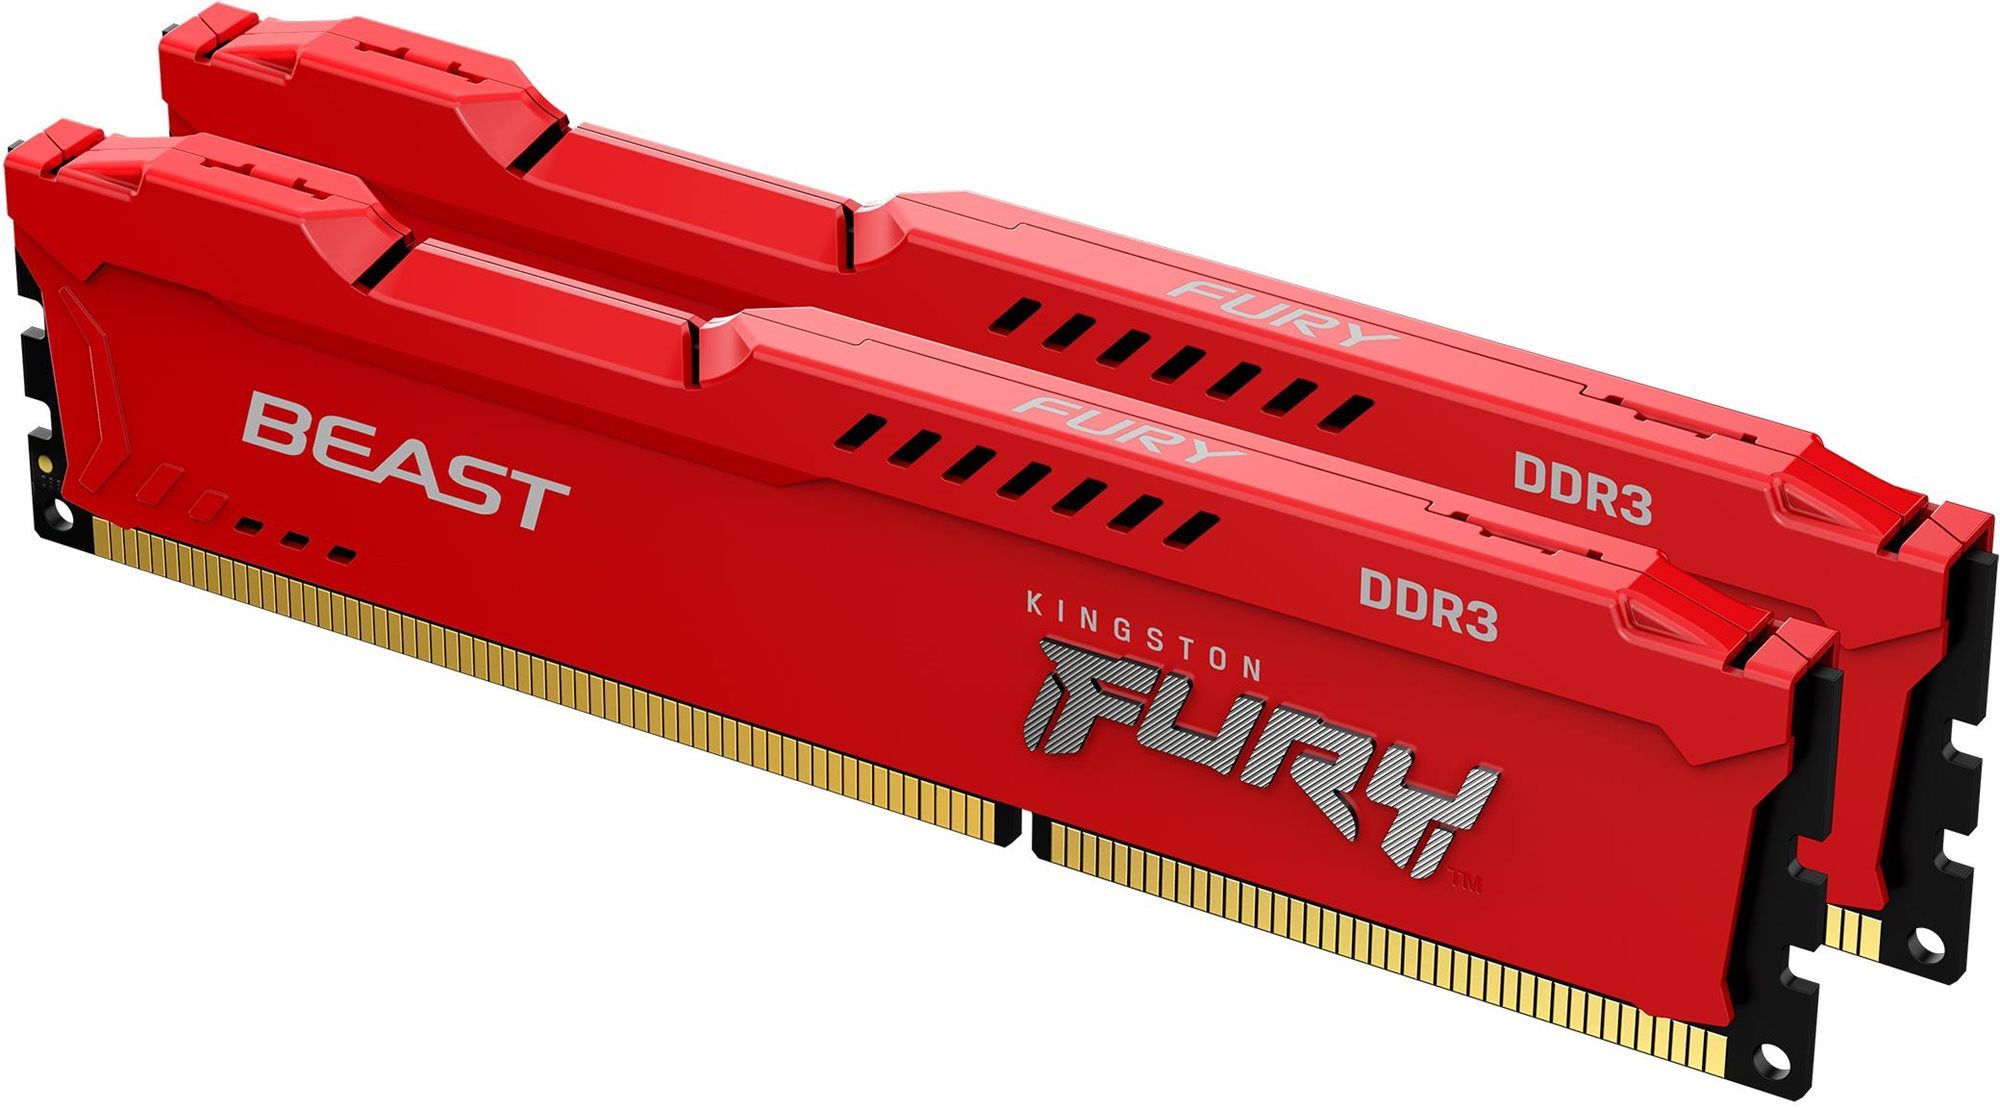 Rendszermemória Kingston FURY 8GB KIT DDR3 1866 MHz CL10 Beast Red